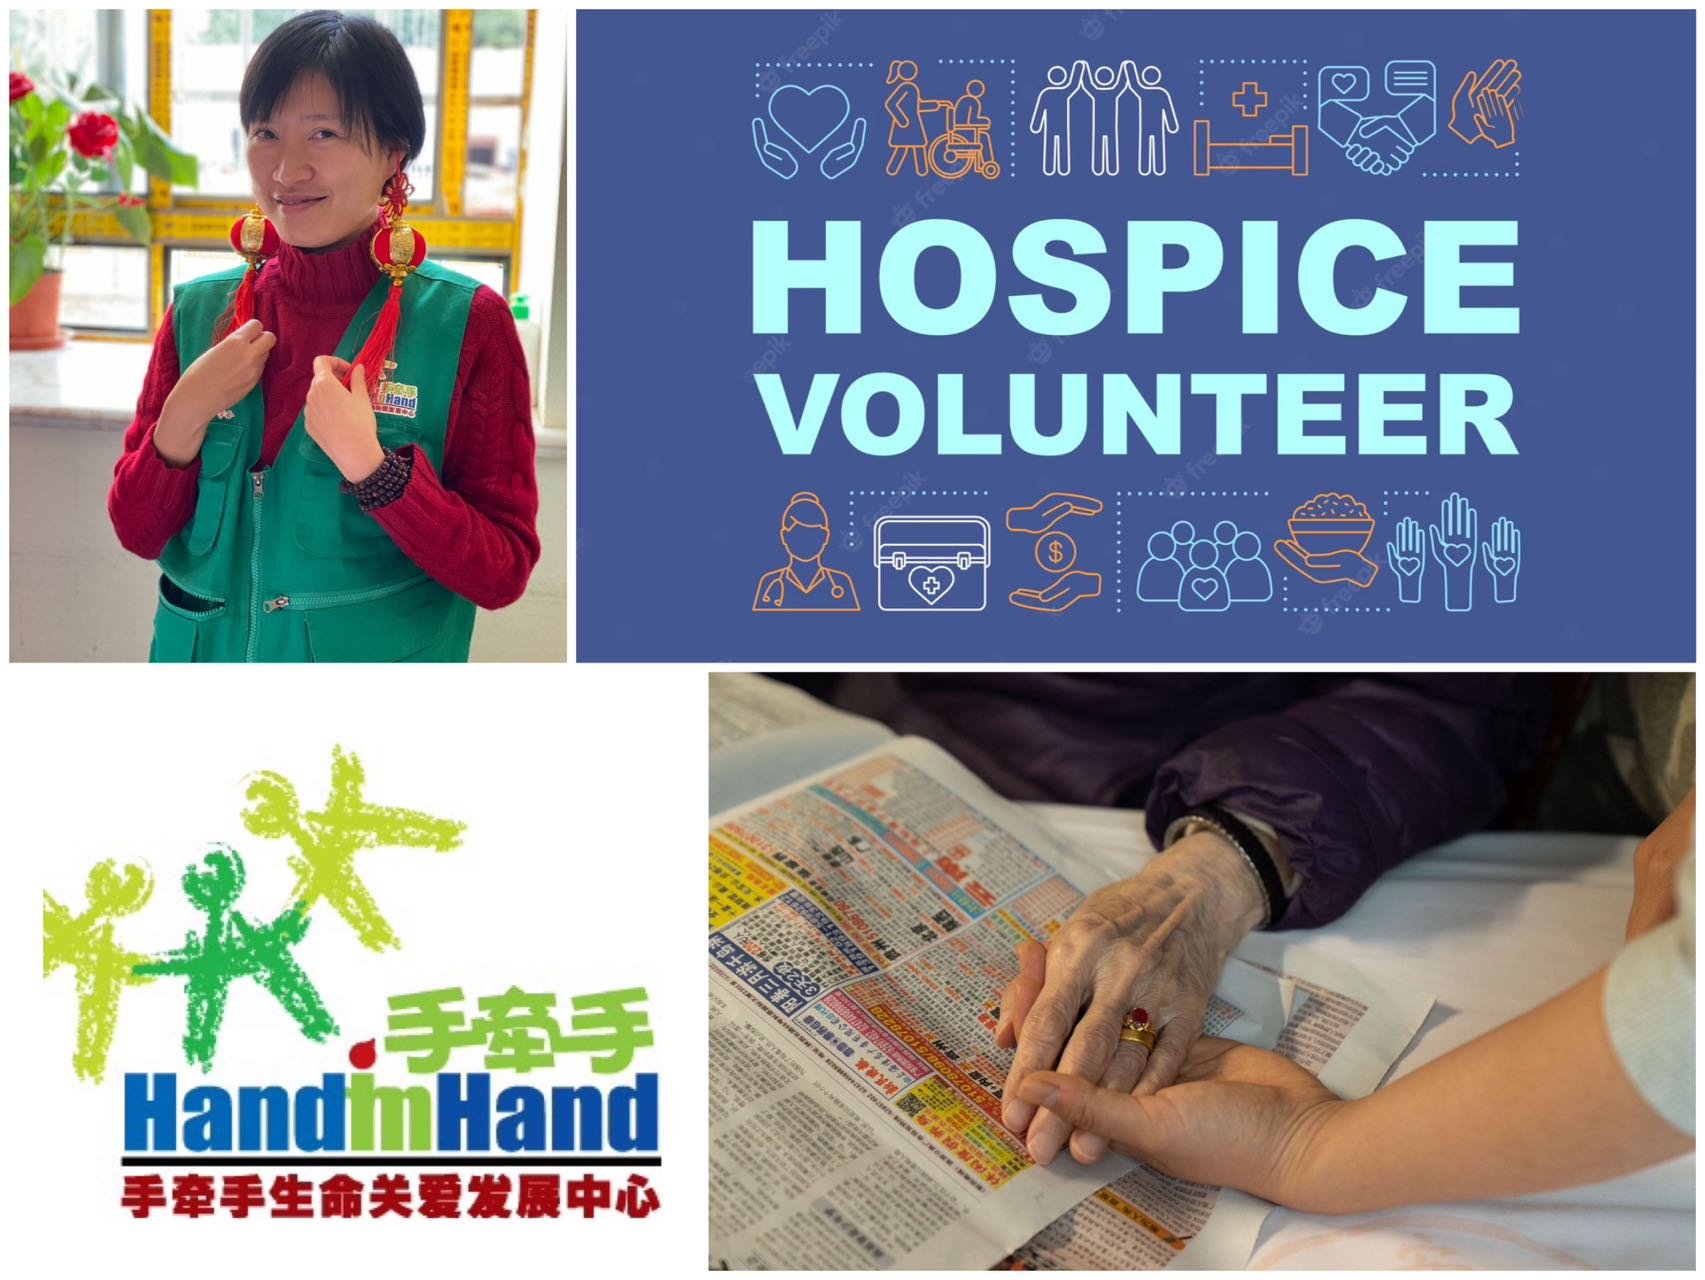 Zhou Yan: She works for a China-based hospice volunteer NGO called 手牵手 [Shǒuqiānshǒu].